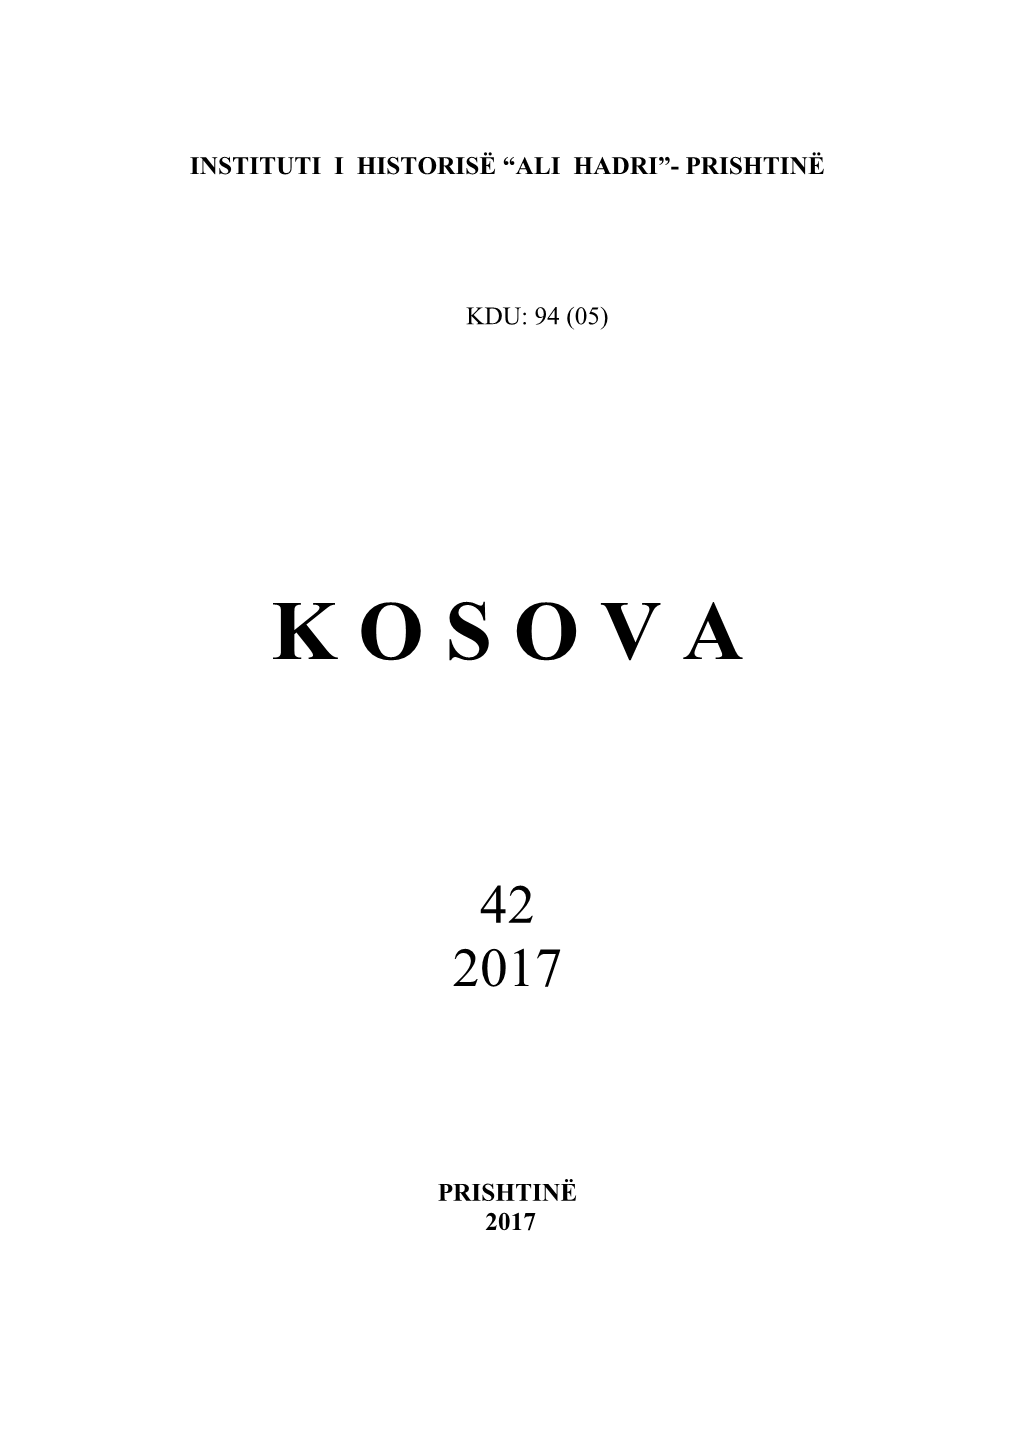 Kosova, 42 (2017)